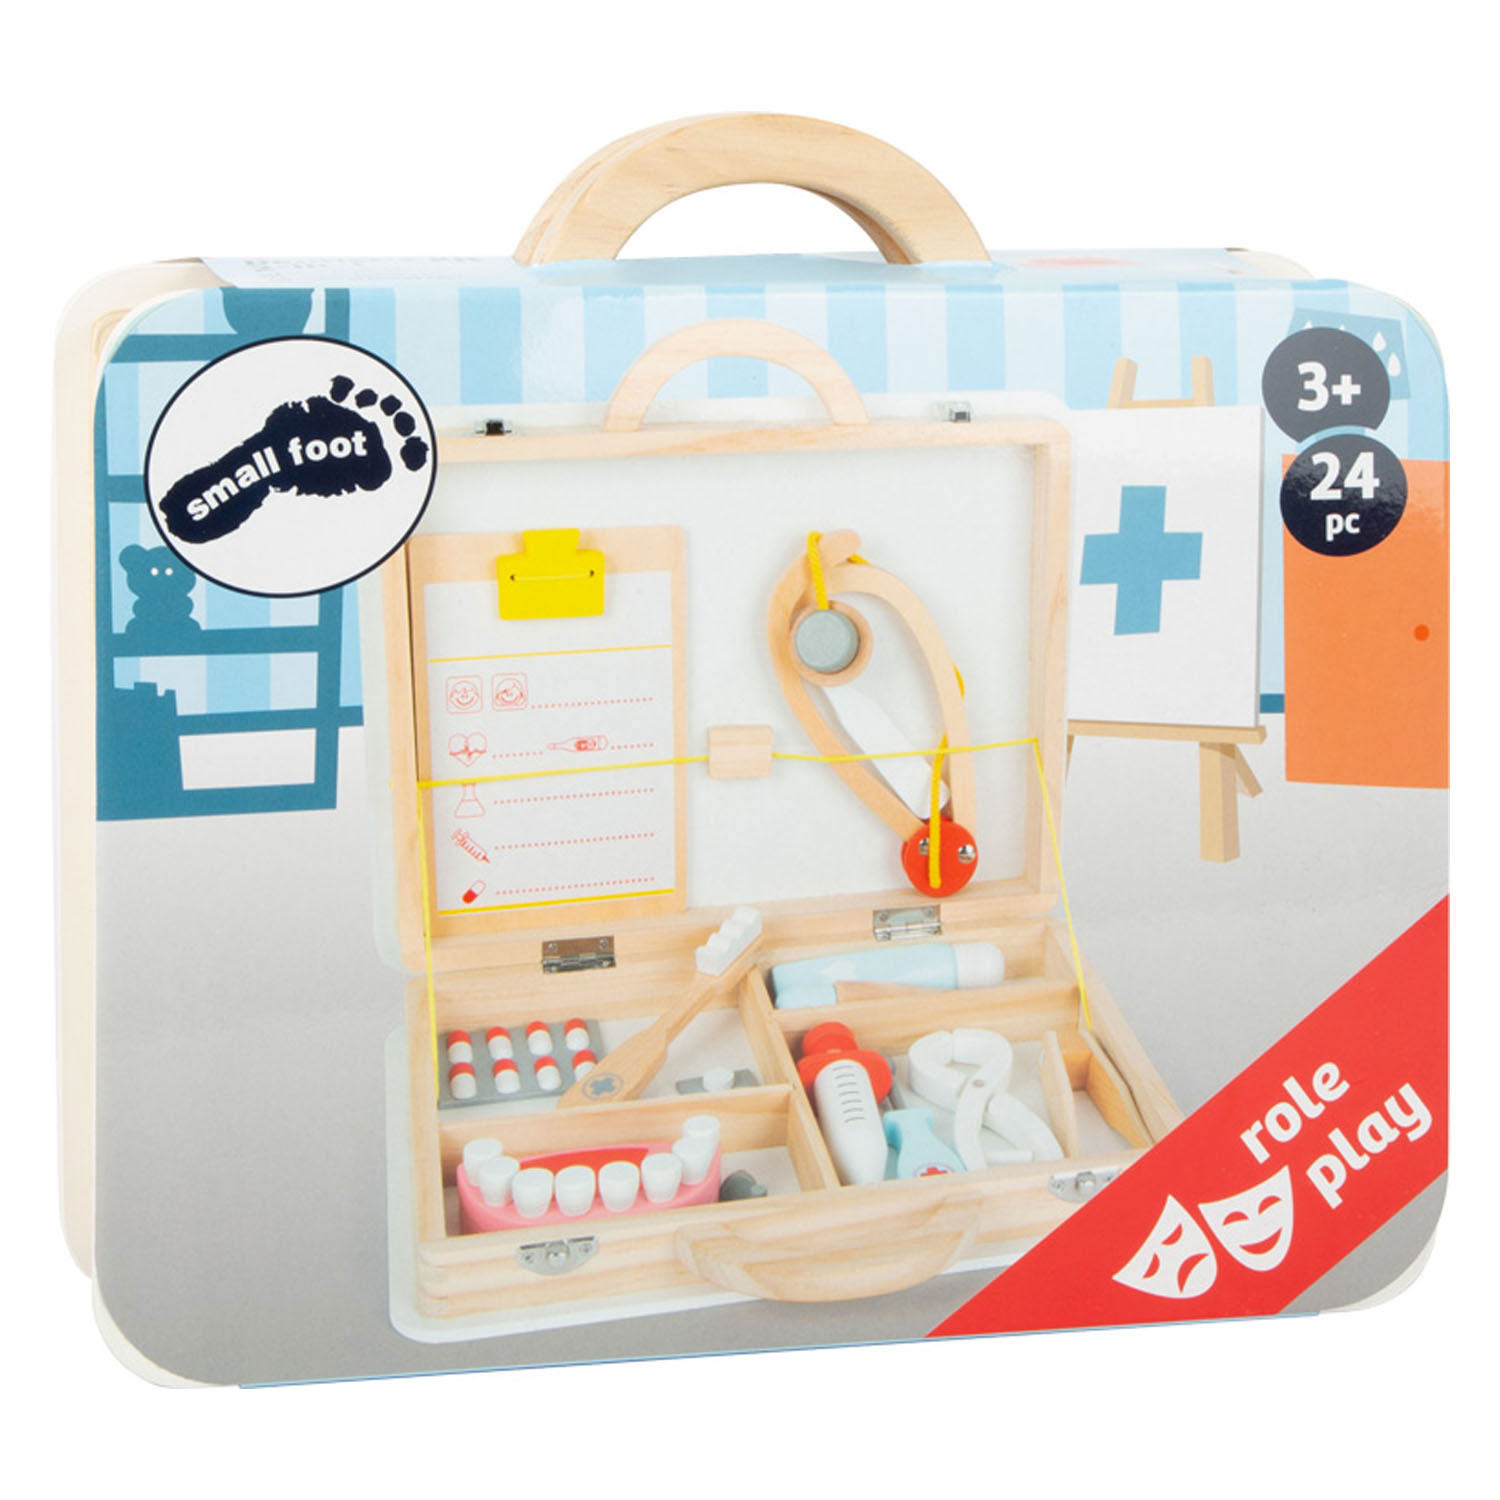 Small Foot - Arzt- und Zahnarzt-2in1-Set aus Holz im Koffer